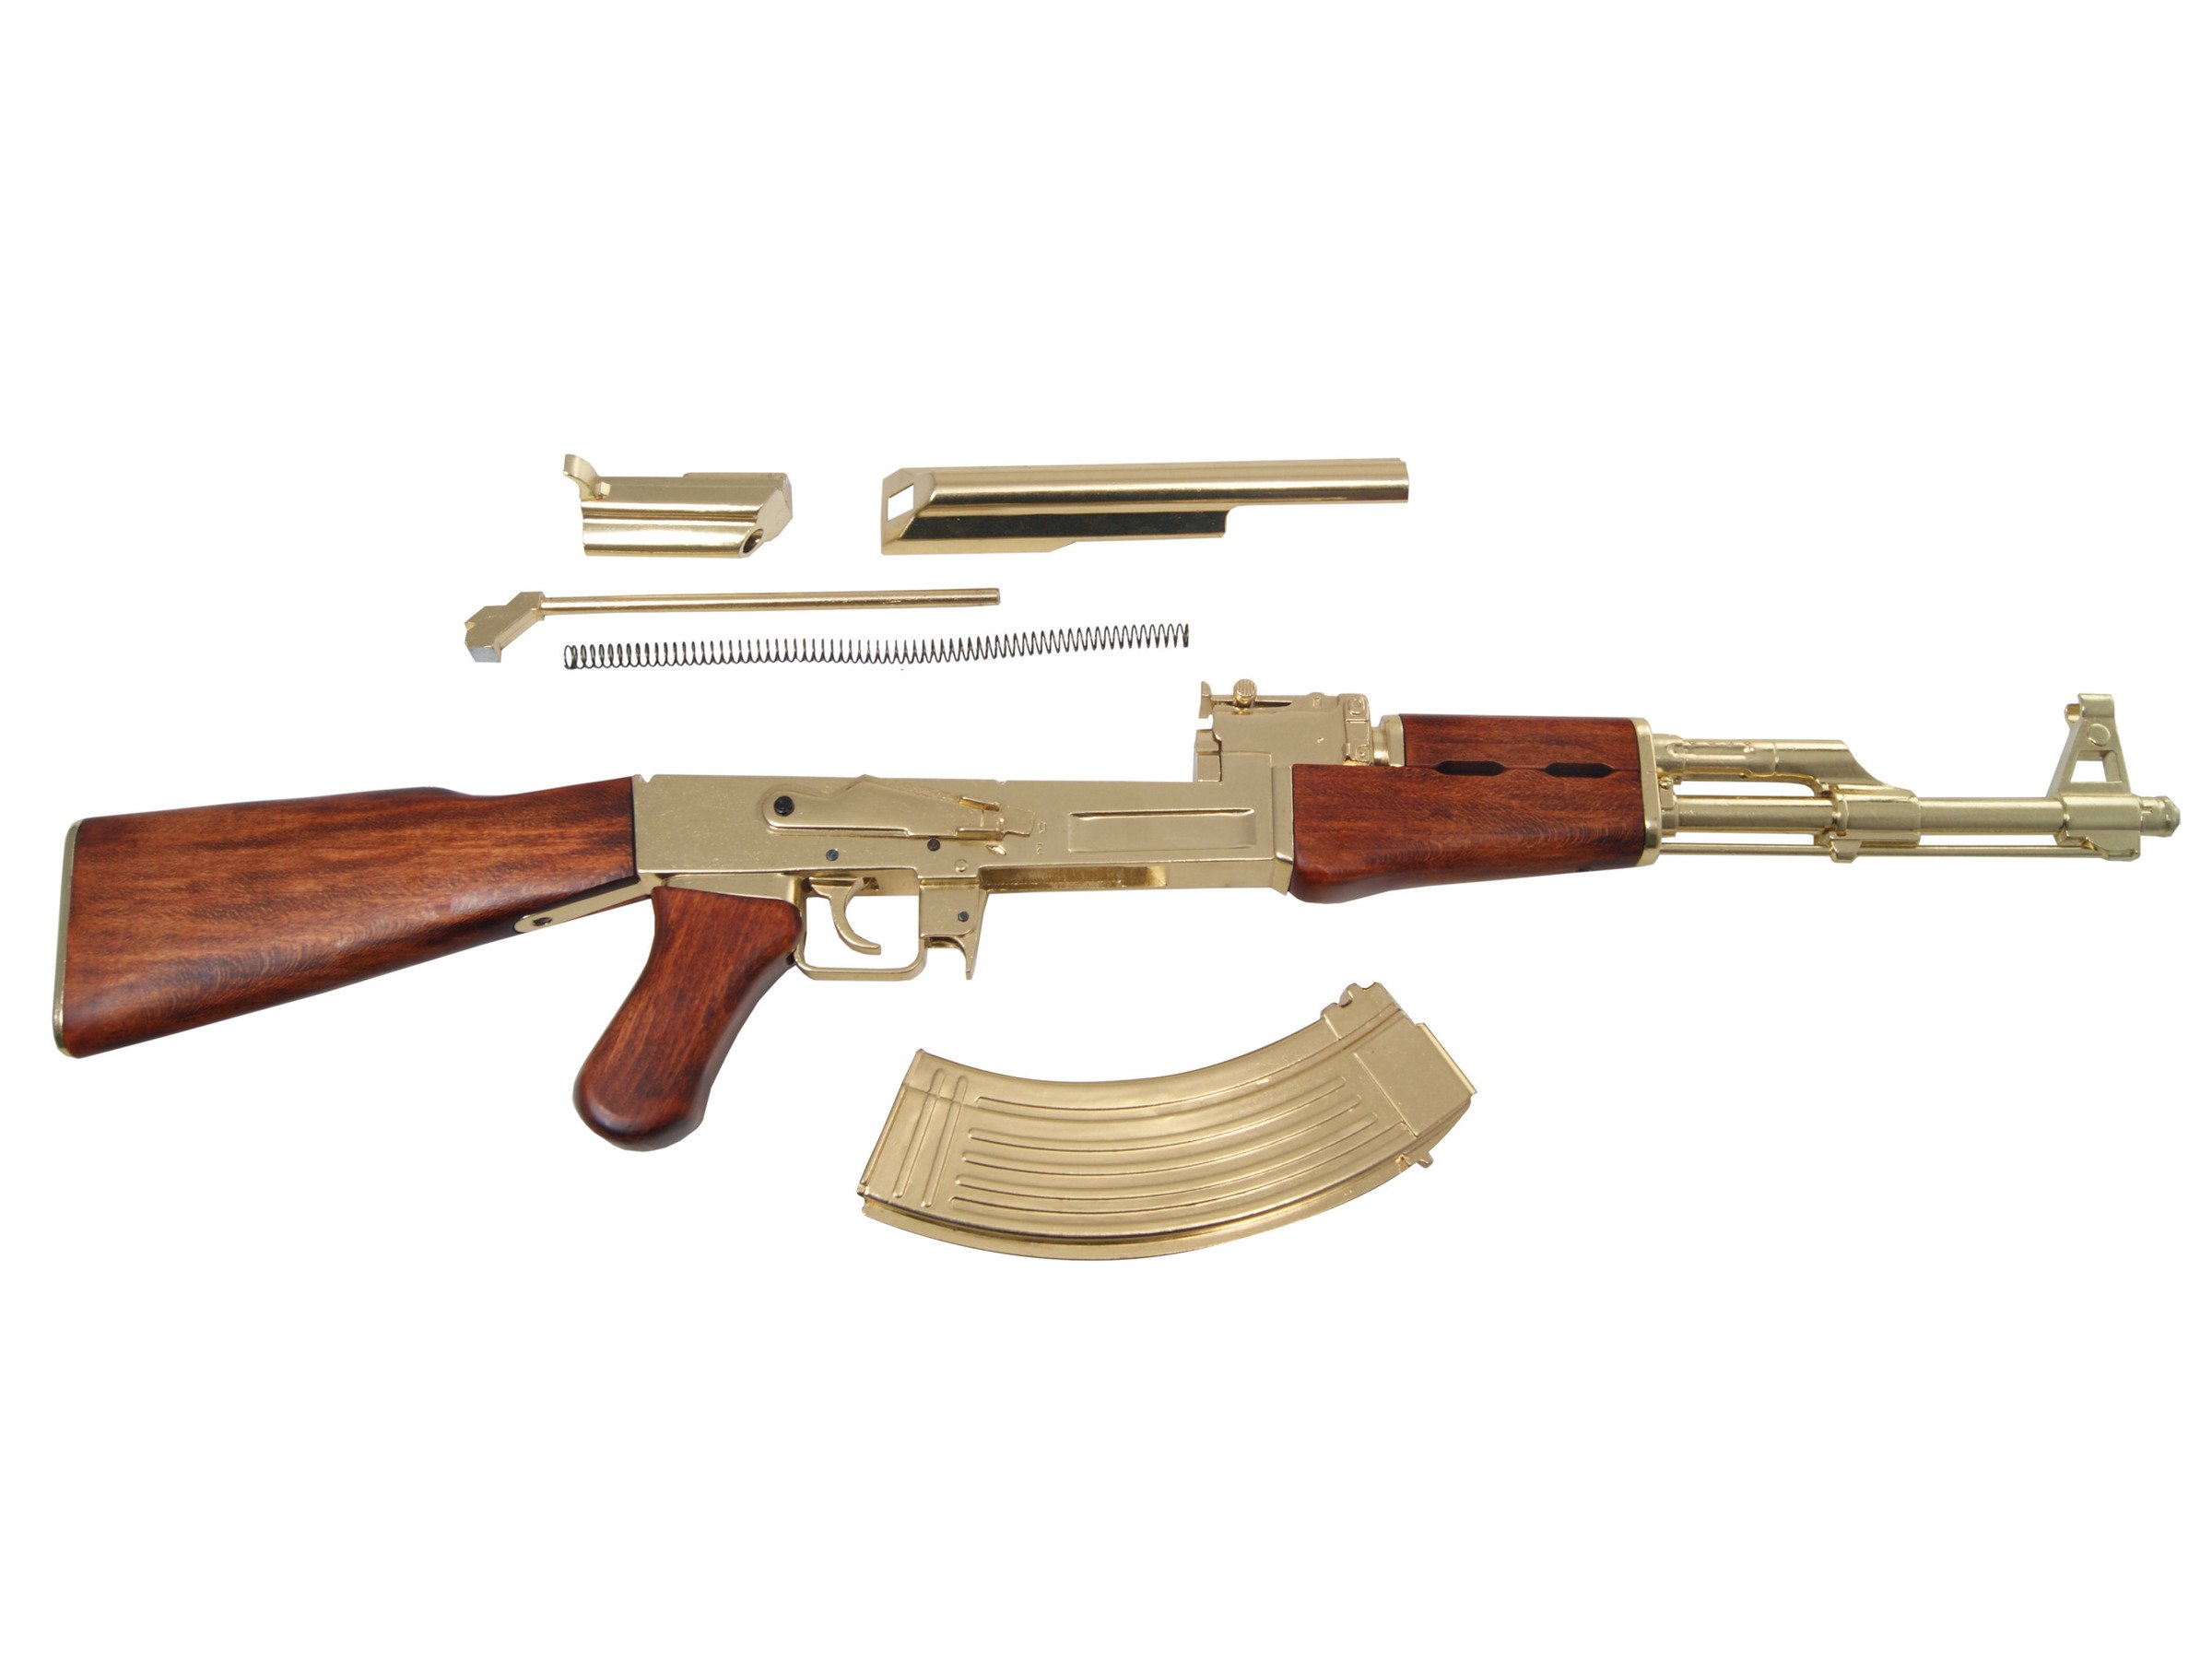 Golden AK-47 assault rifle - model gun.